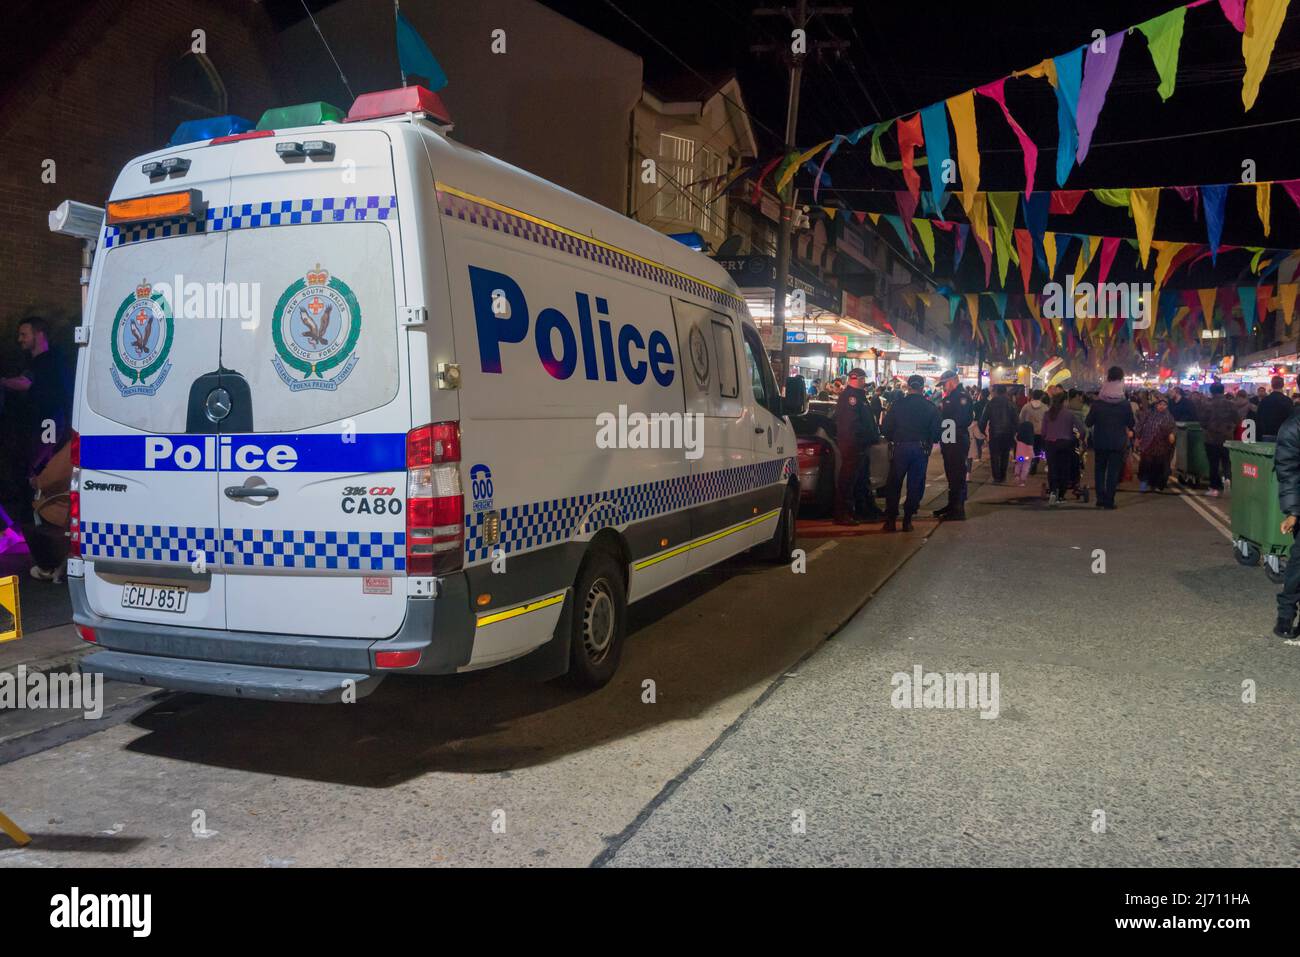 30. April, Lakemba, Sydney, Australien: In der letzten Nacht des Ramadan in Sydney ist das Ramadan Nights Festival von Sonnenuntergang um 17,30 Uhr bis zum 02,00. Am nächsten Morgen in vollem Gange. Polizeibeamte stehen in der Nähe eines mobilen Polizeiwagens der Kommandoeinheit am Ende der Haldon Street in Lakemba. Das größte Problem, vor dem sie standen, war jedoch, an welcher Essensliste sie anstanden, um die lokalen Köstlichkeiten zu probieren. Stockfoto